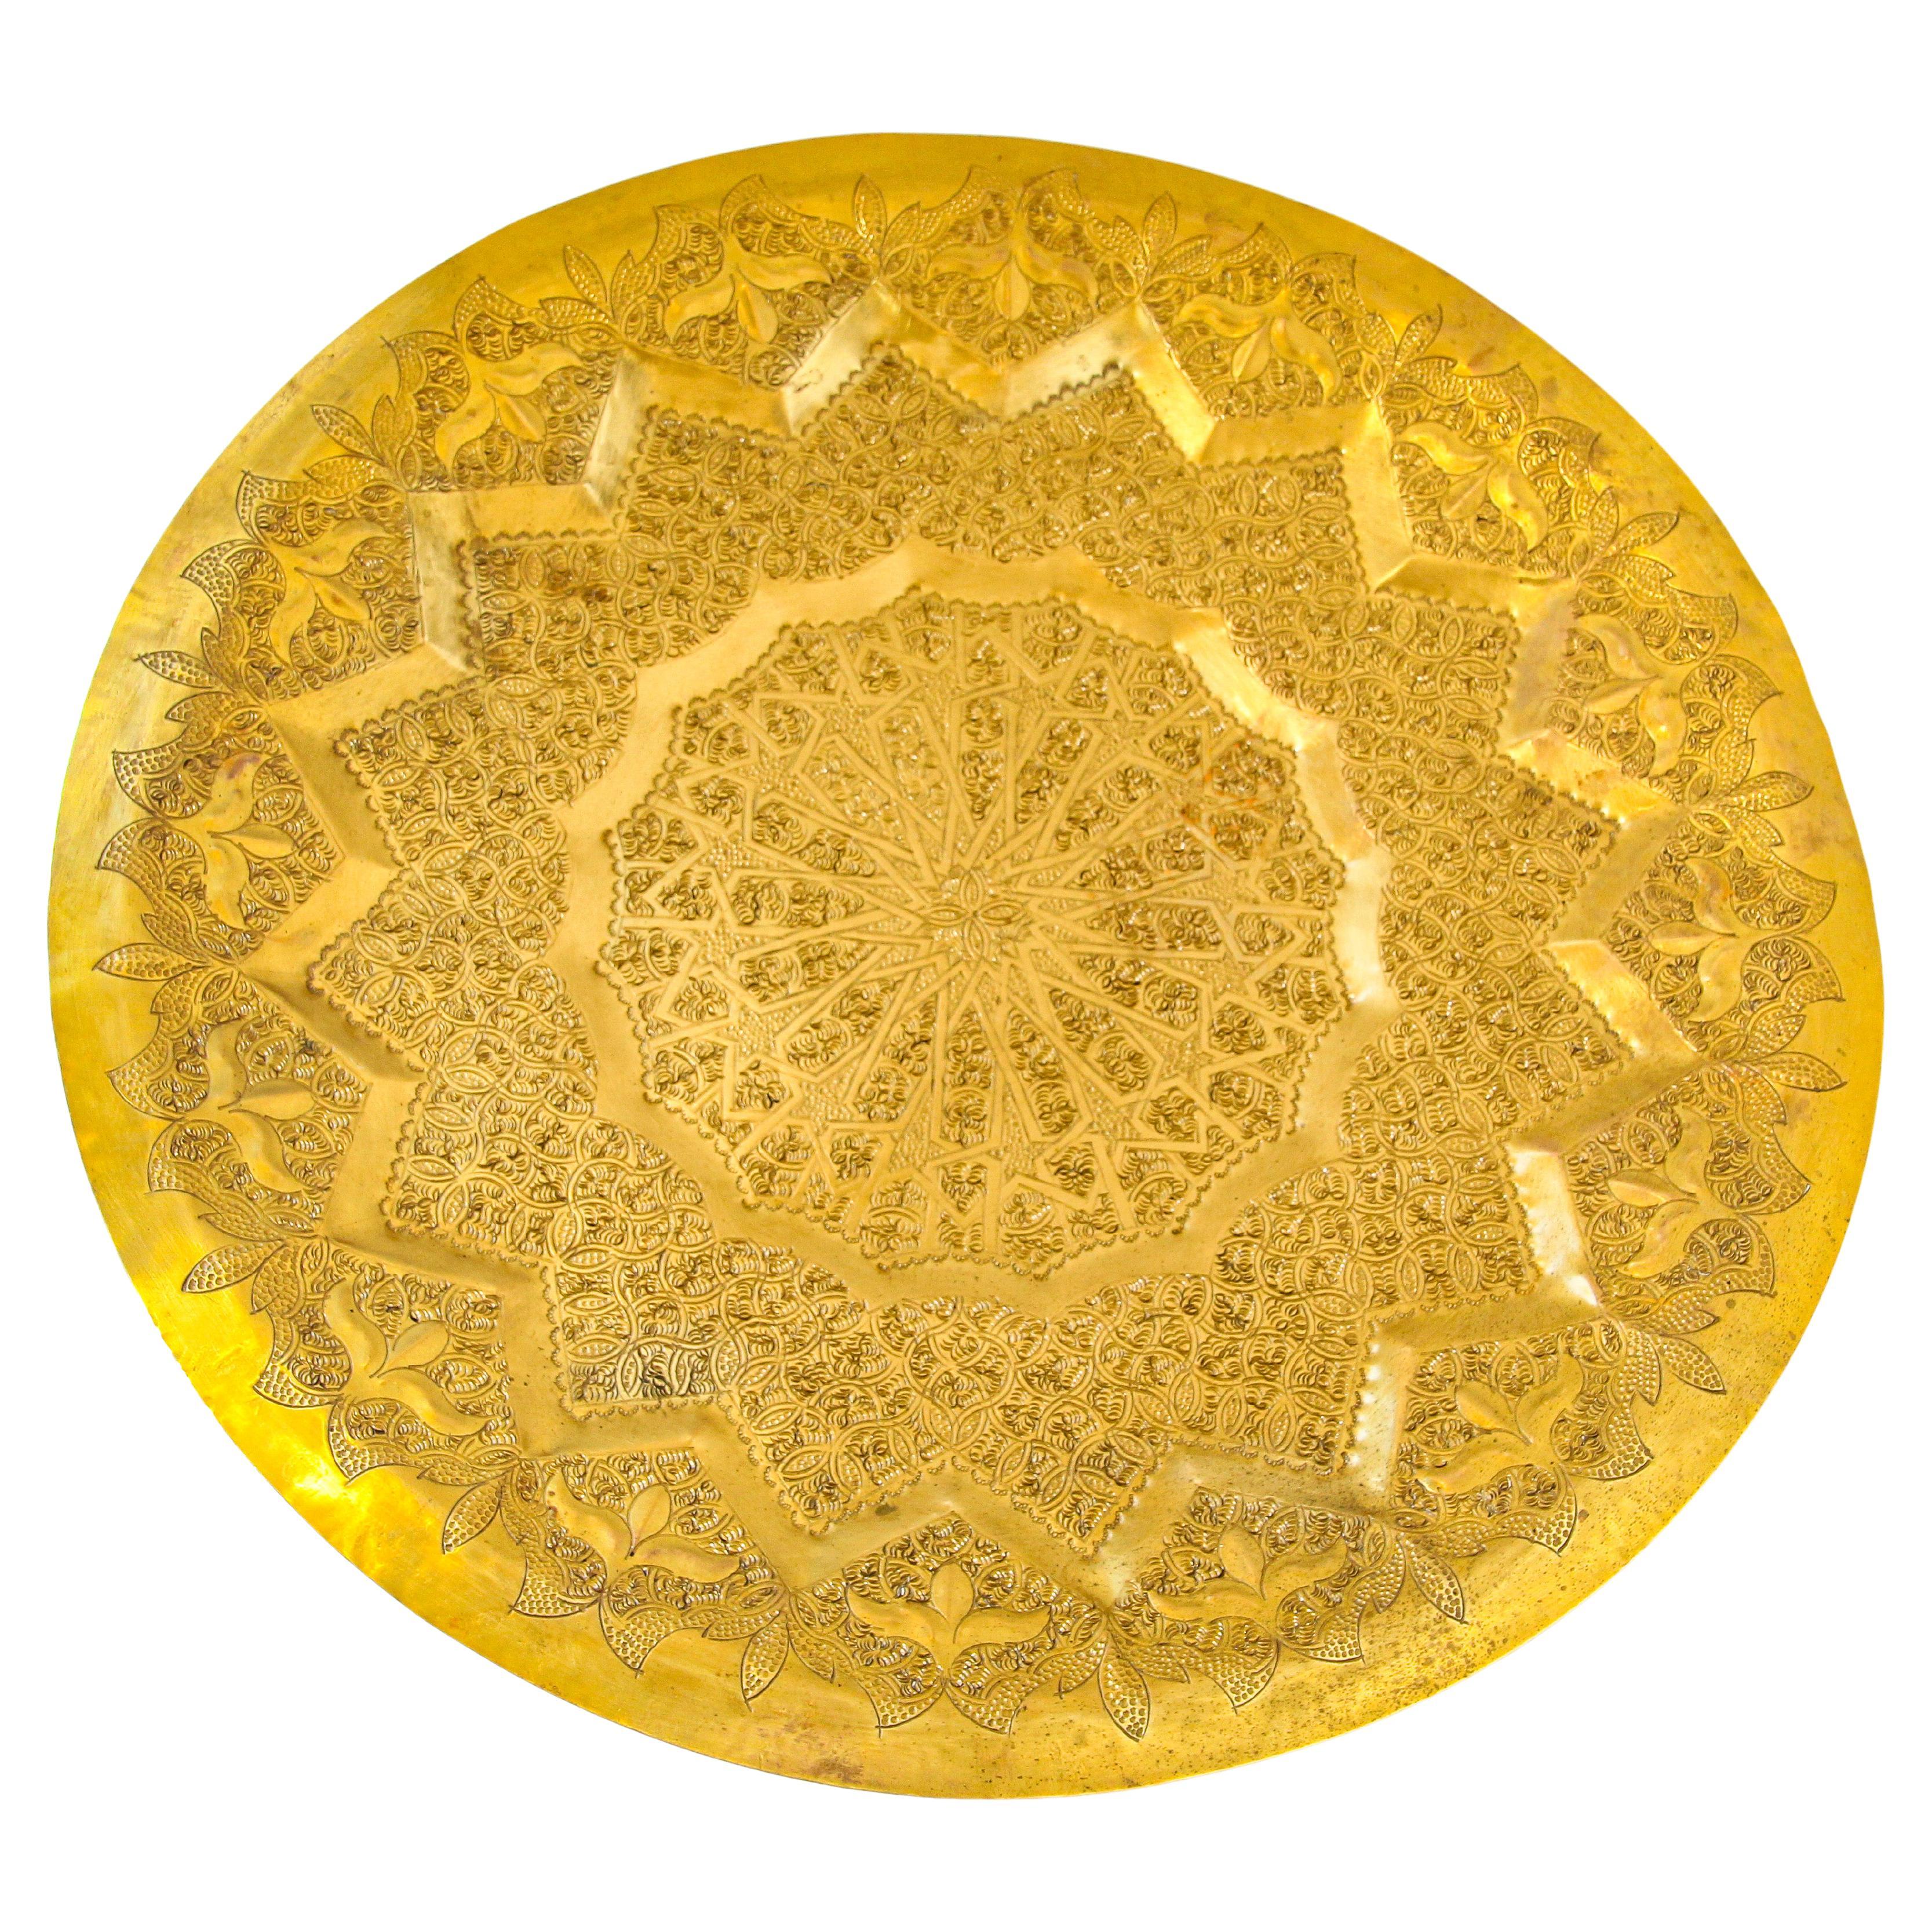 Fabuleux plateau marocain mauresque en laiton martelé à la main, œuvre d'art multidimensionnelle complexe, motifs repoussés en laiton très fins de la métallurgie islamique.
Plateau décoratif en laiton, fabriqué à la main et suspendu au mur, avec un